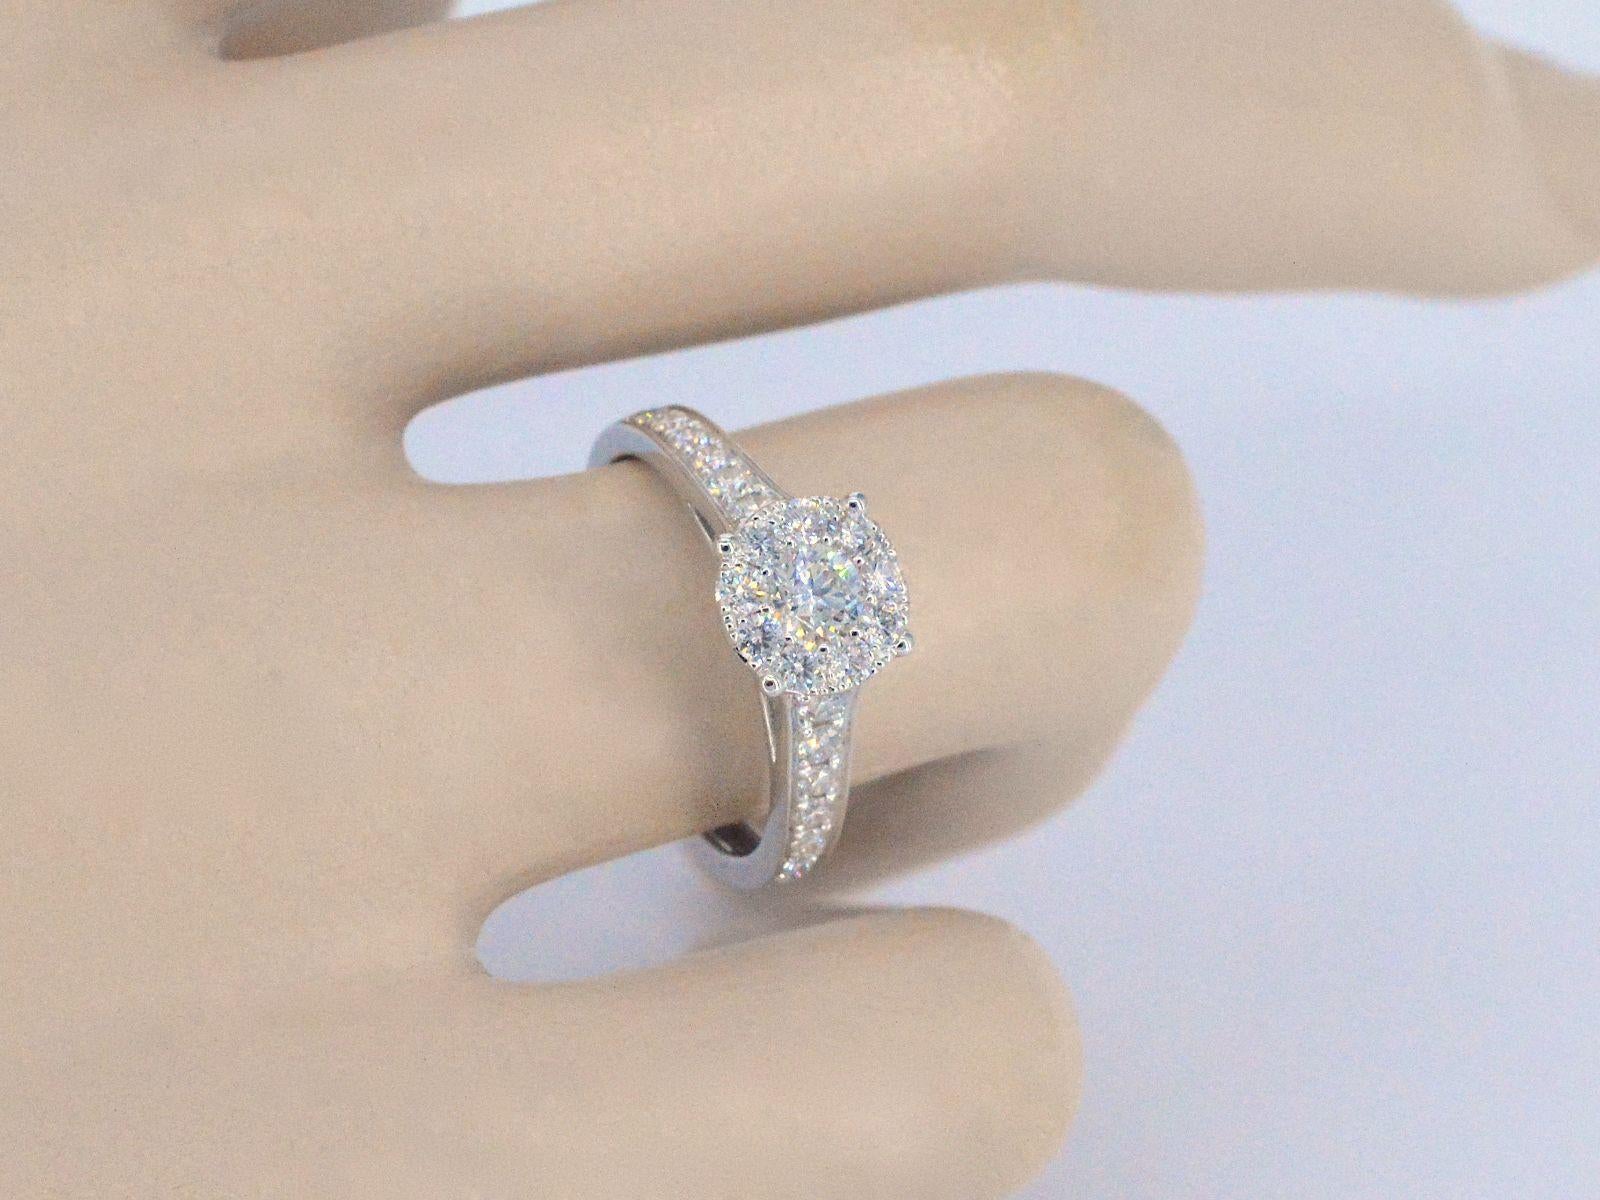 Une bague entourage en or blanc de haute qualité avec des diamants taille brillant de 1,00 carat est un bijou luxueux qui présente un magnifique diamant central entouré de diamants plus petits. La bague est fabriquée en or blanc de haute qualité, ce